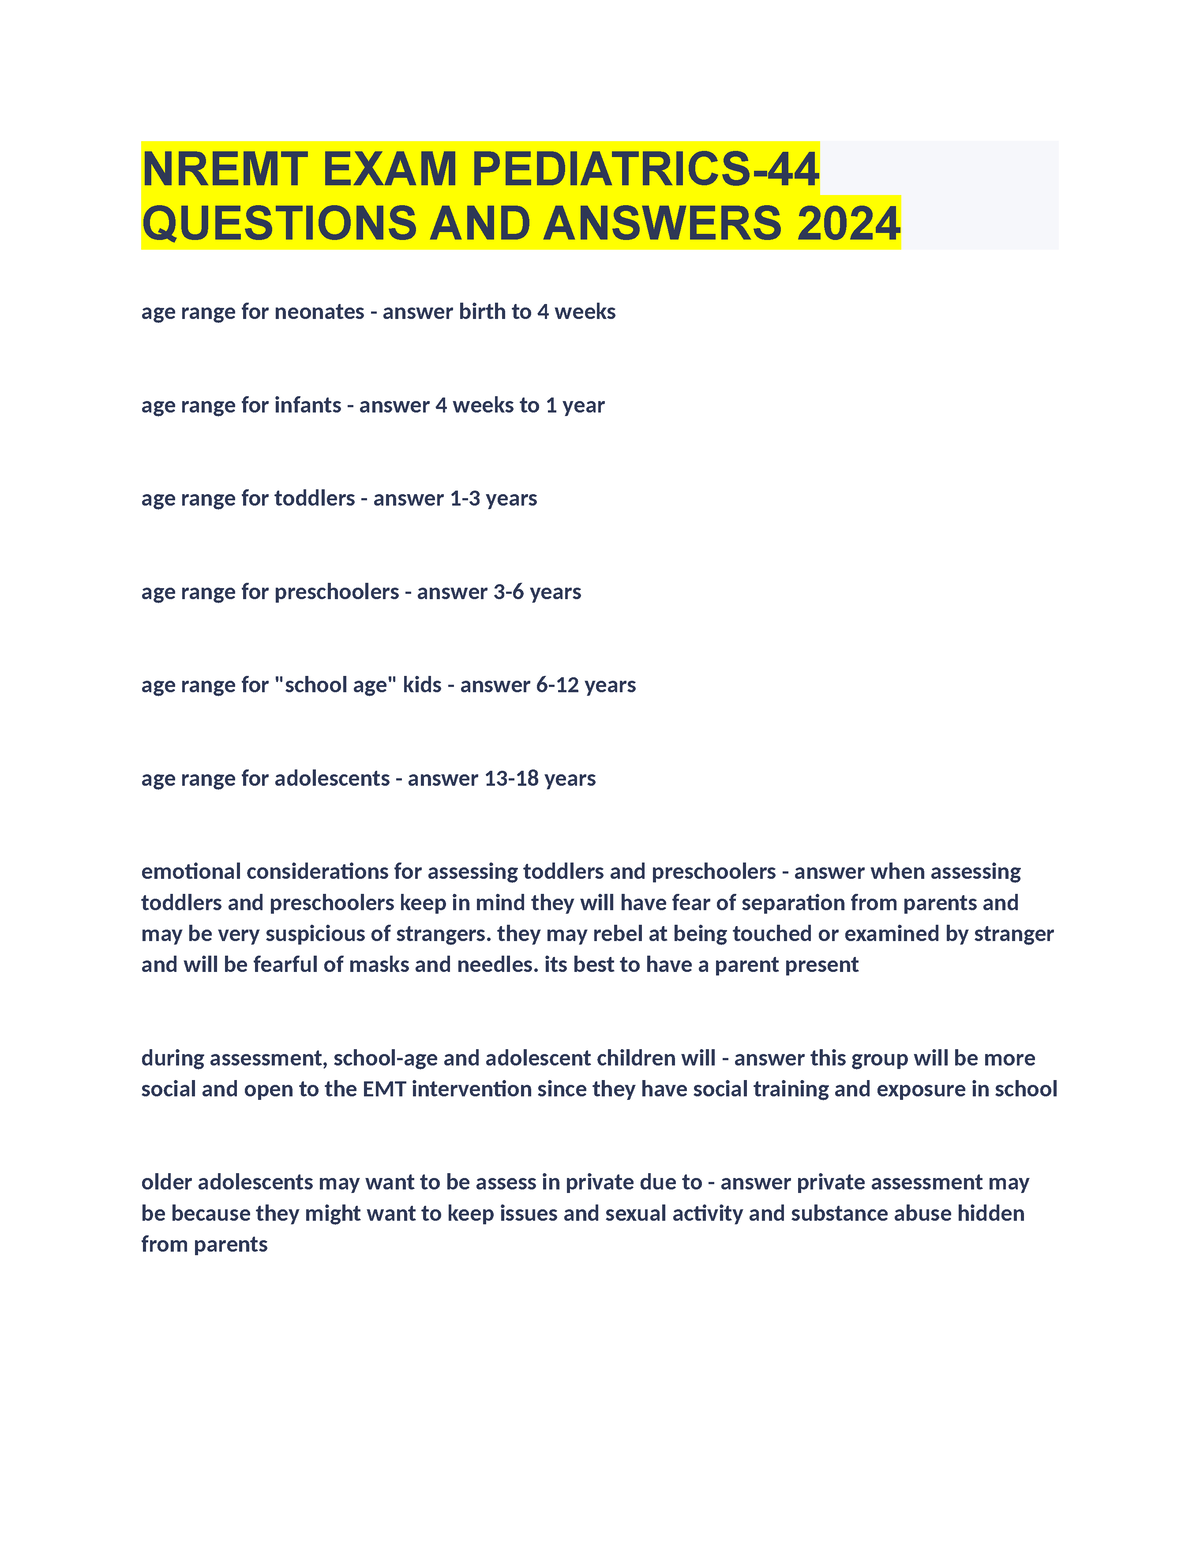 NREMT EXAM Pediatrics44 Questions AND Answers 2024 NREMT EXAM